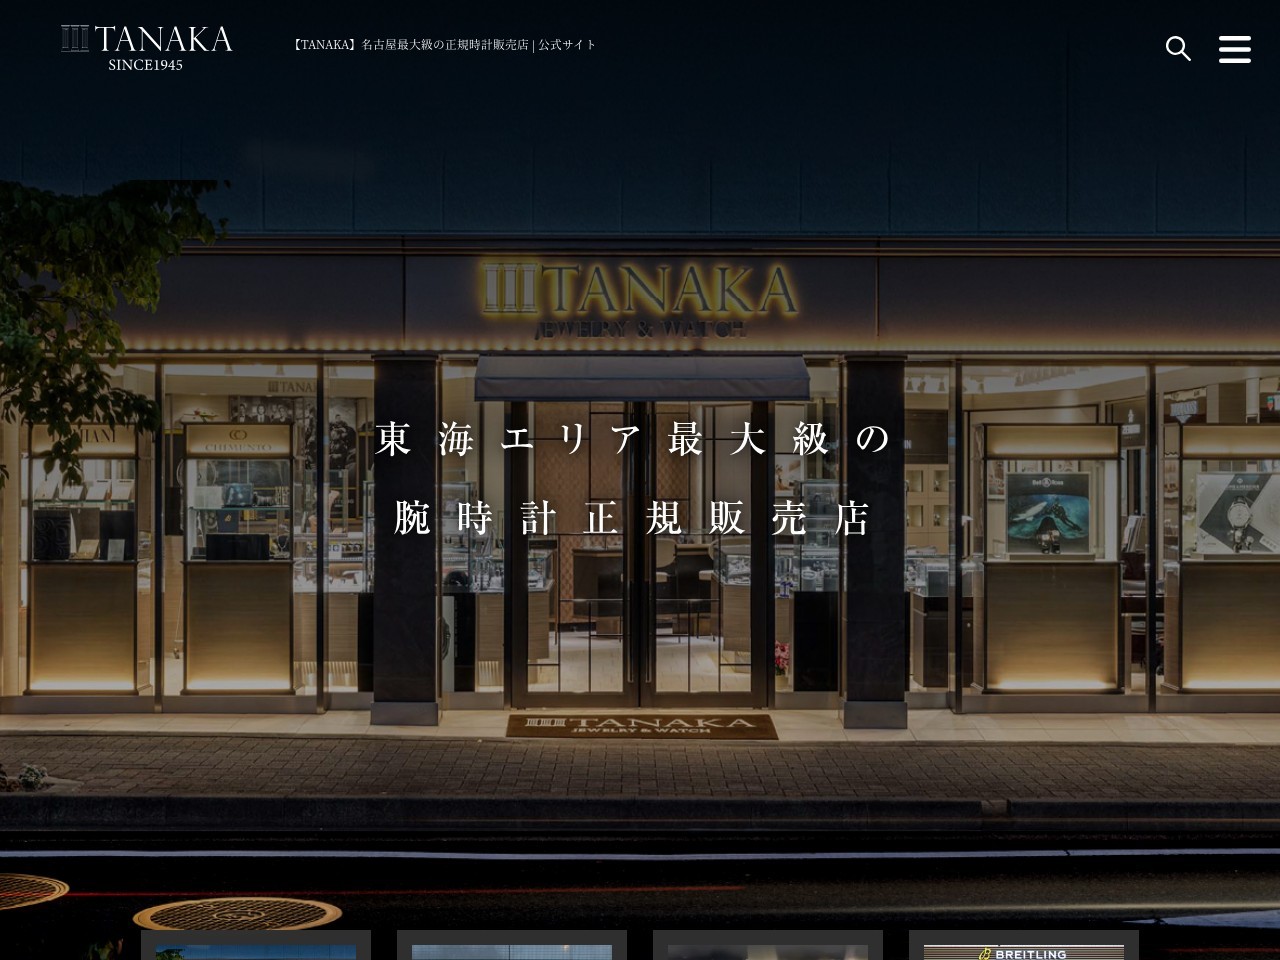 【TANAKA】名古屋最大級の正規時計販売店 | 公式サイト